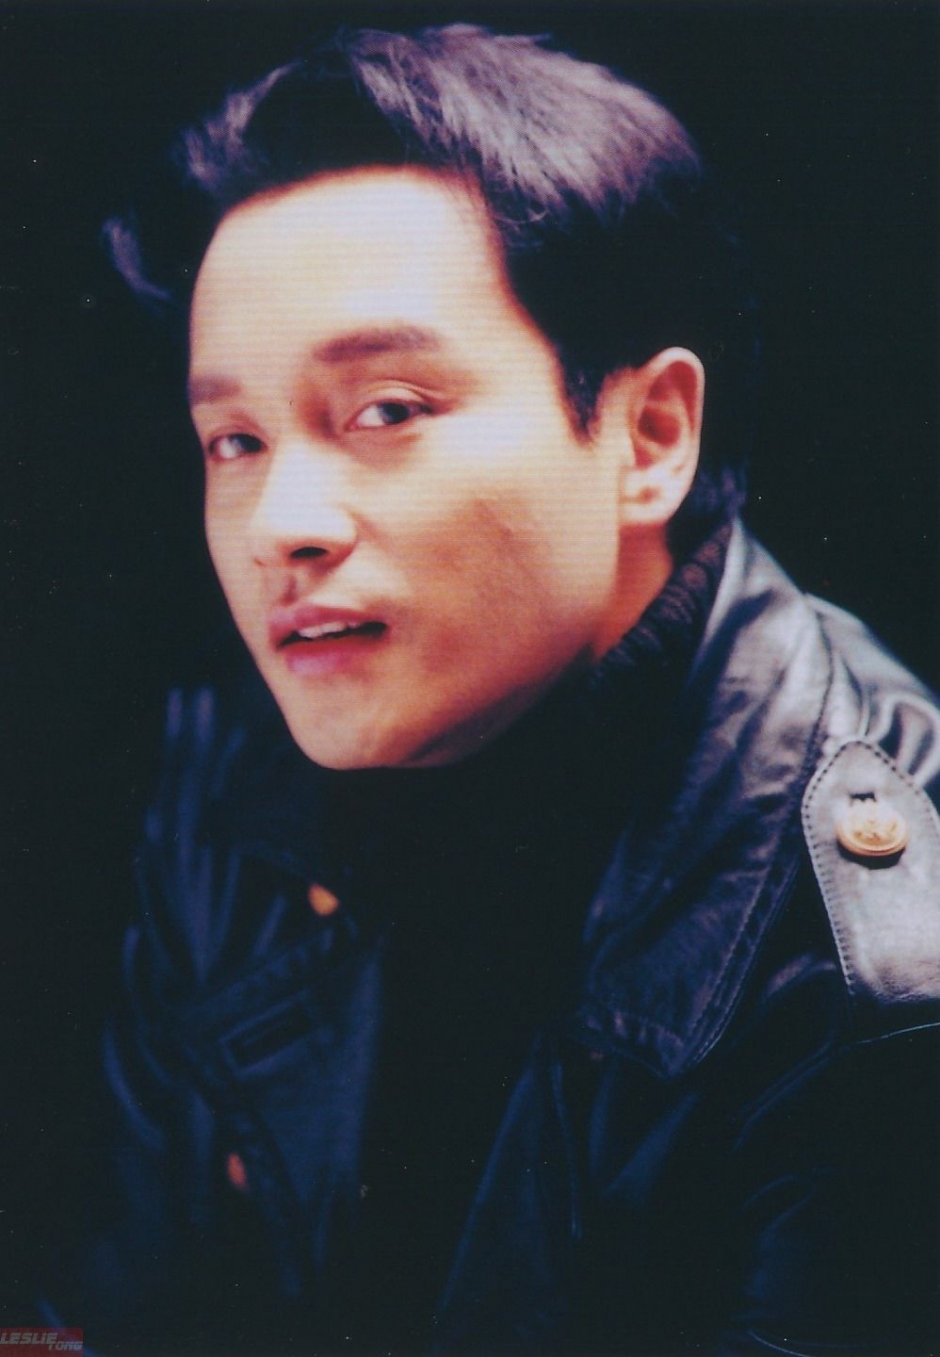 张国荣,1956年9月12日生于香港,歌手,演员,音乐人;影视歌多栖发展的